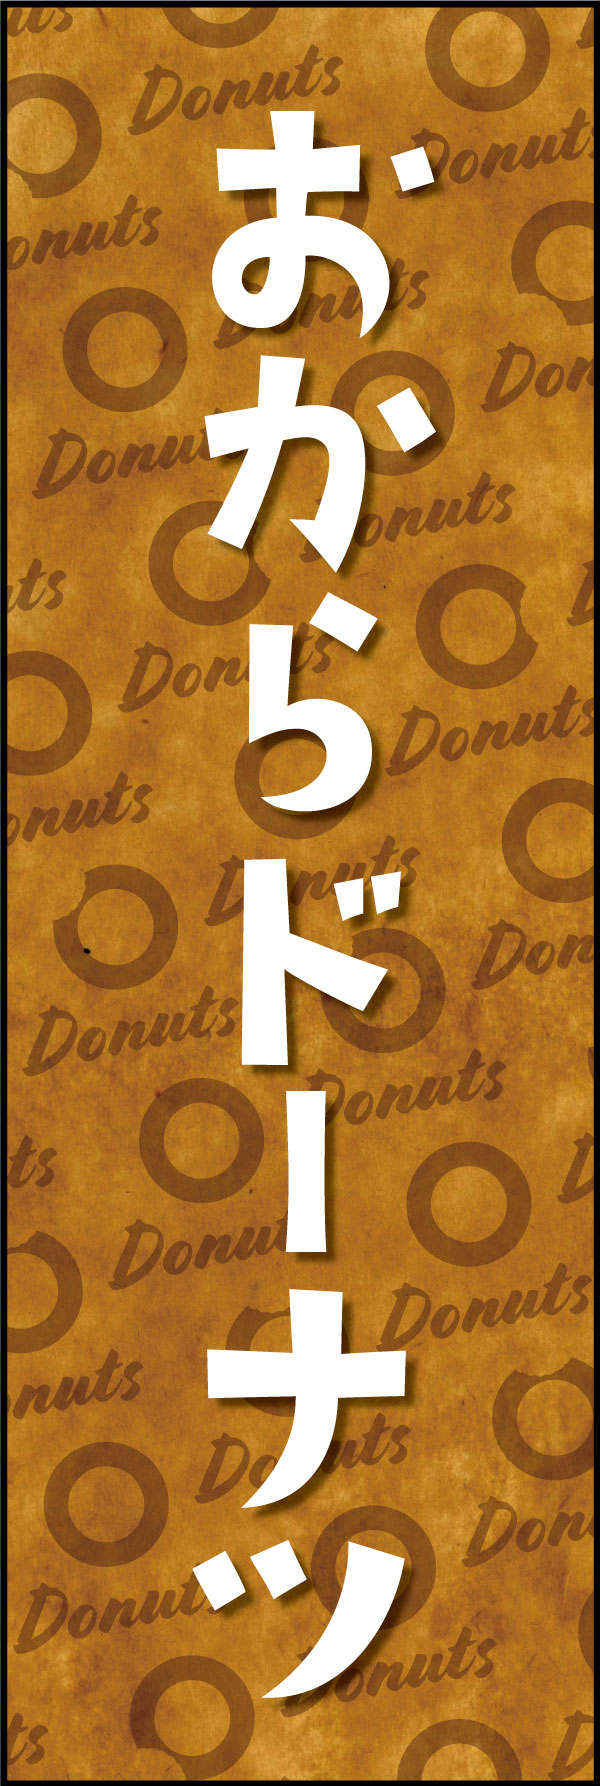 おからドーナツ 166_01「おからドーナツ」ののぼりです。クラフト感ある包み紙のような背景デザインと文字で、ヘルシーでオーガニックな雰囲気を演出しました。（Y.M） 